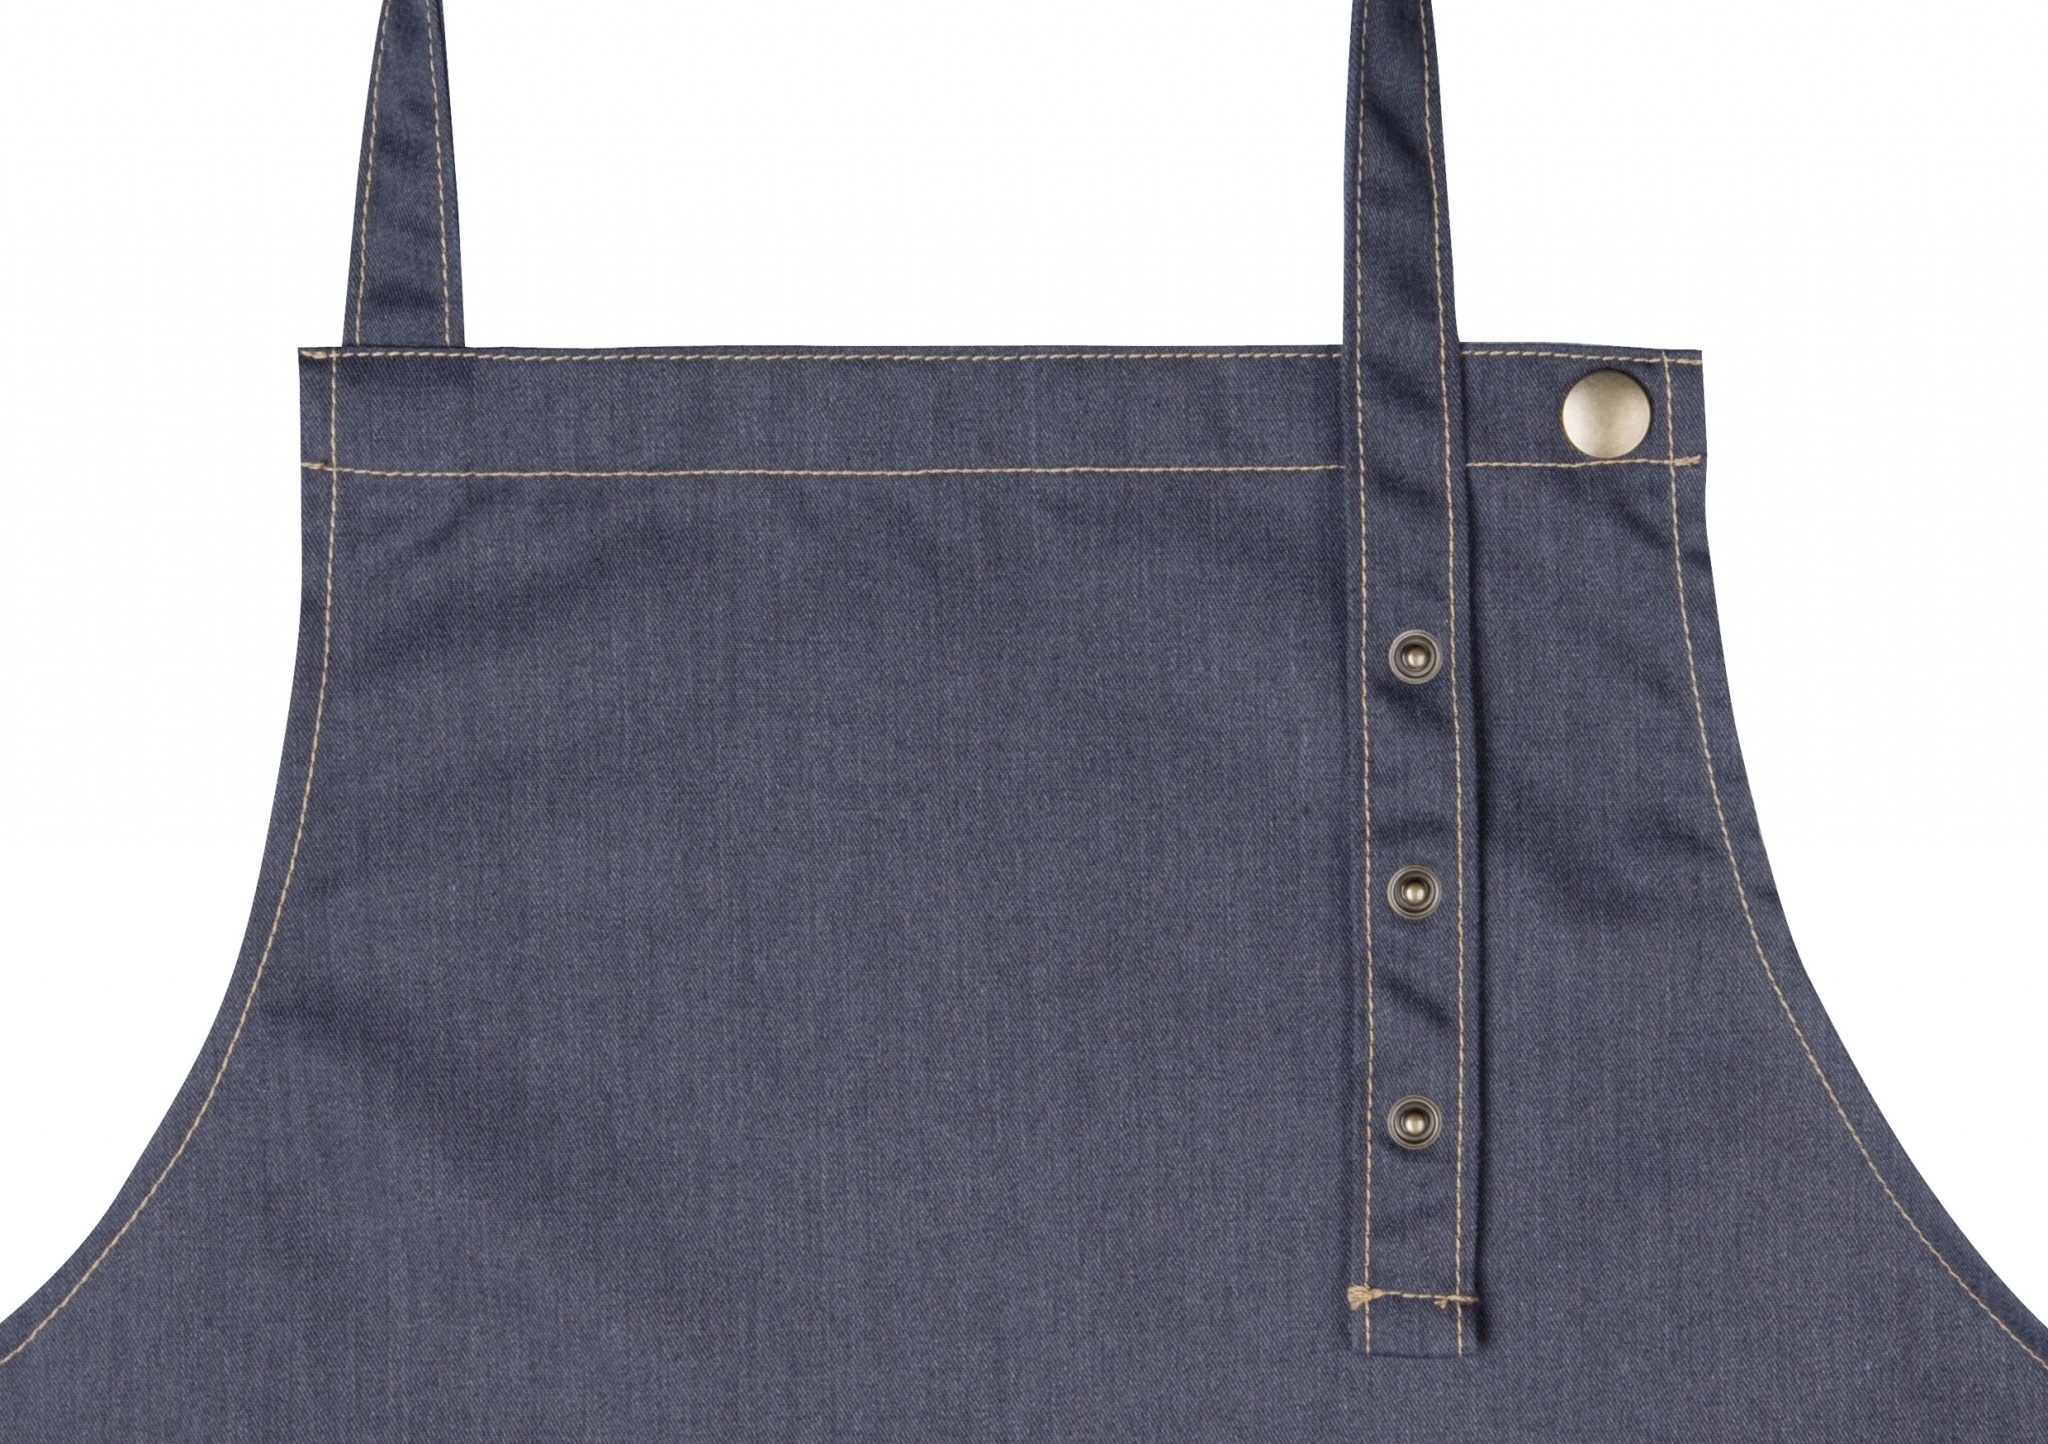 Latzschürze Jeans-Style | 71x95 cm | 65% Polyester / 35% Baumwolle | Erhältlich in 2 Farben